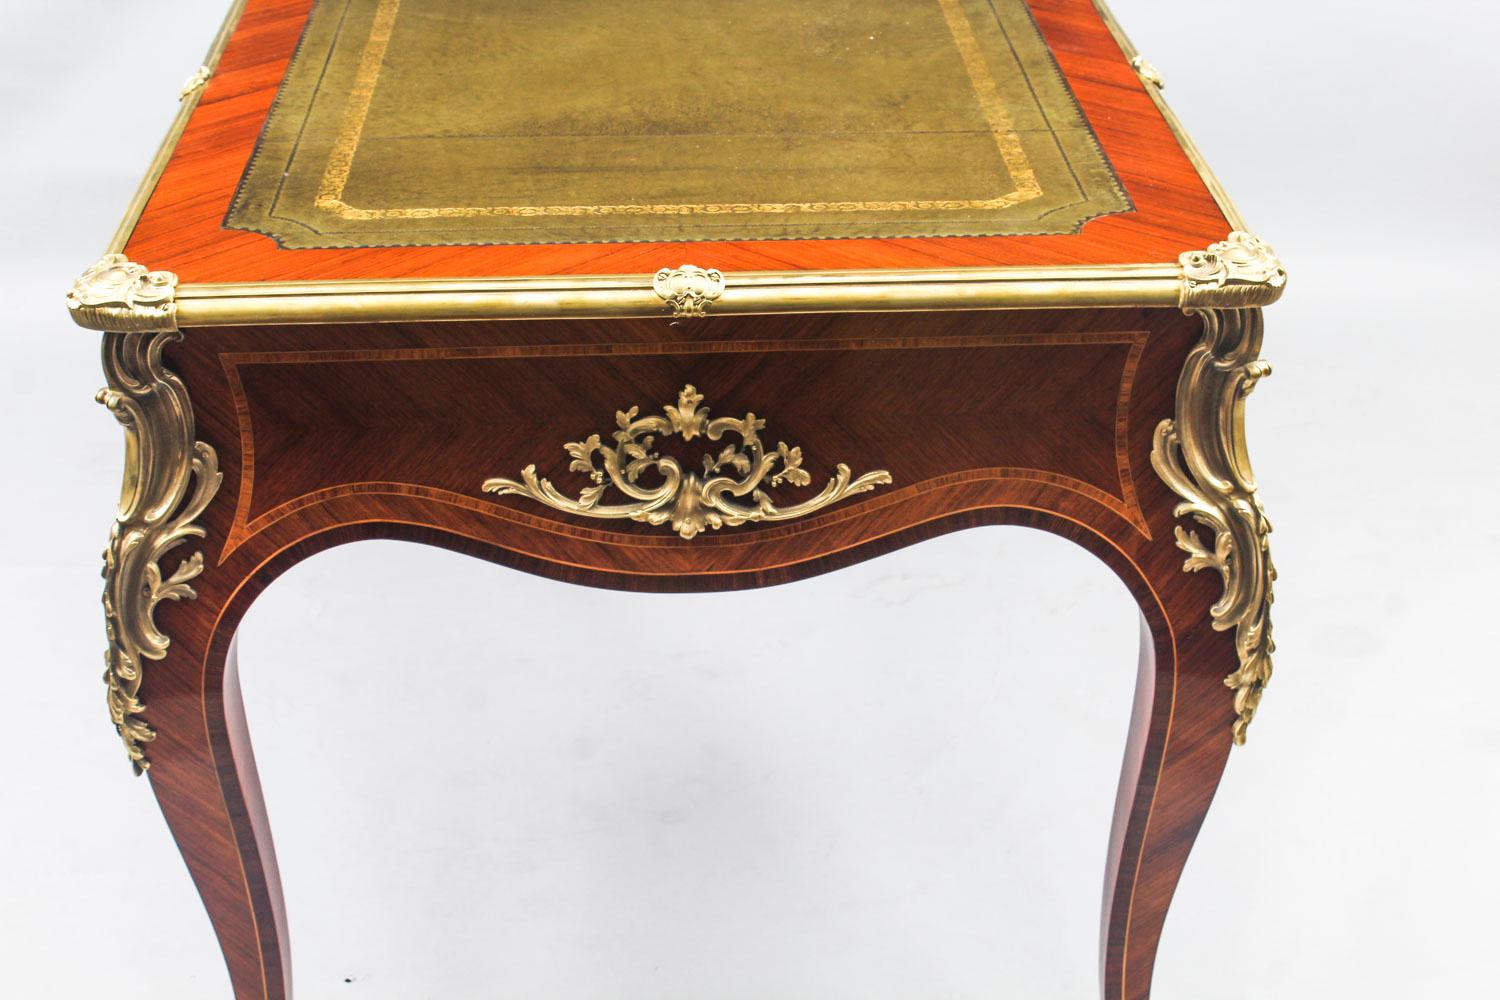 Antique French Louis Revival Kingwood & Ormolu Bureau Plat Desk 19th Century 14